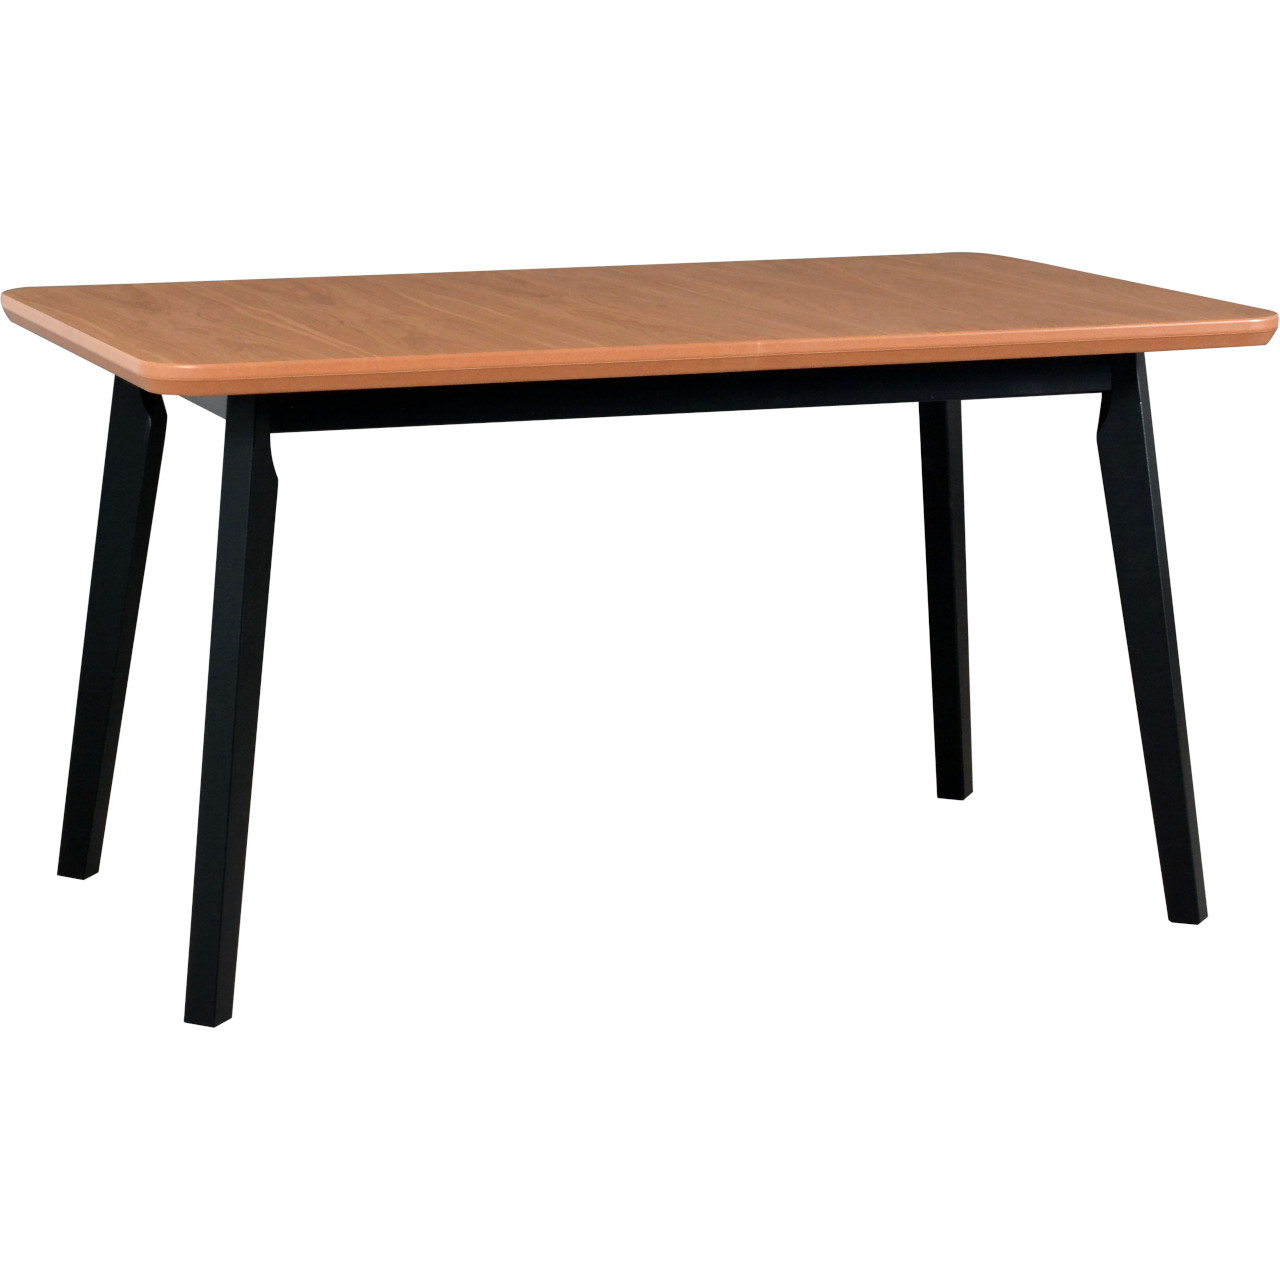 Table OSLO 8 90x160/200 oak veneer / black